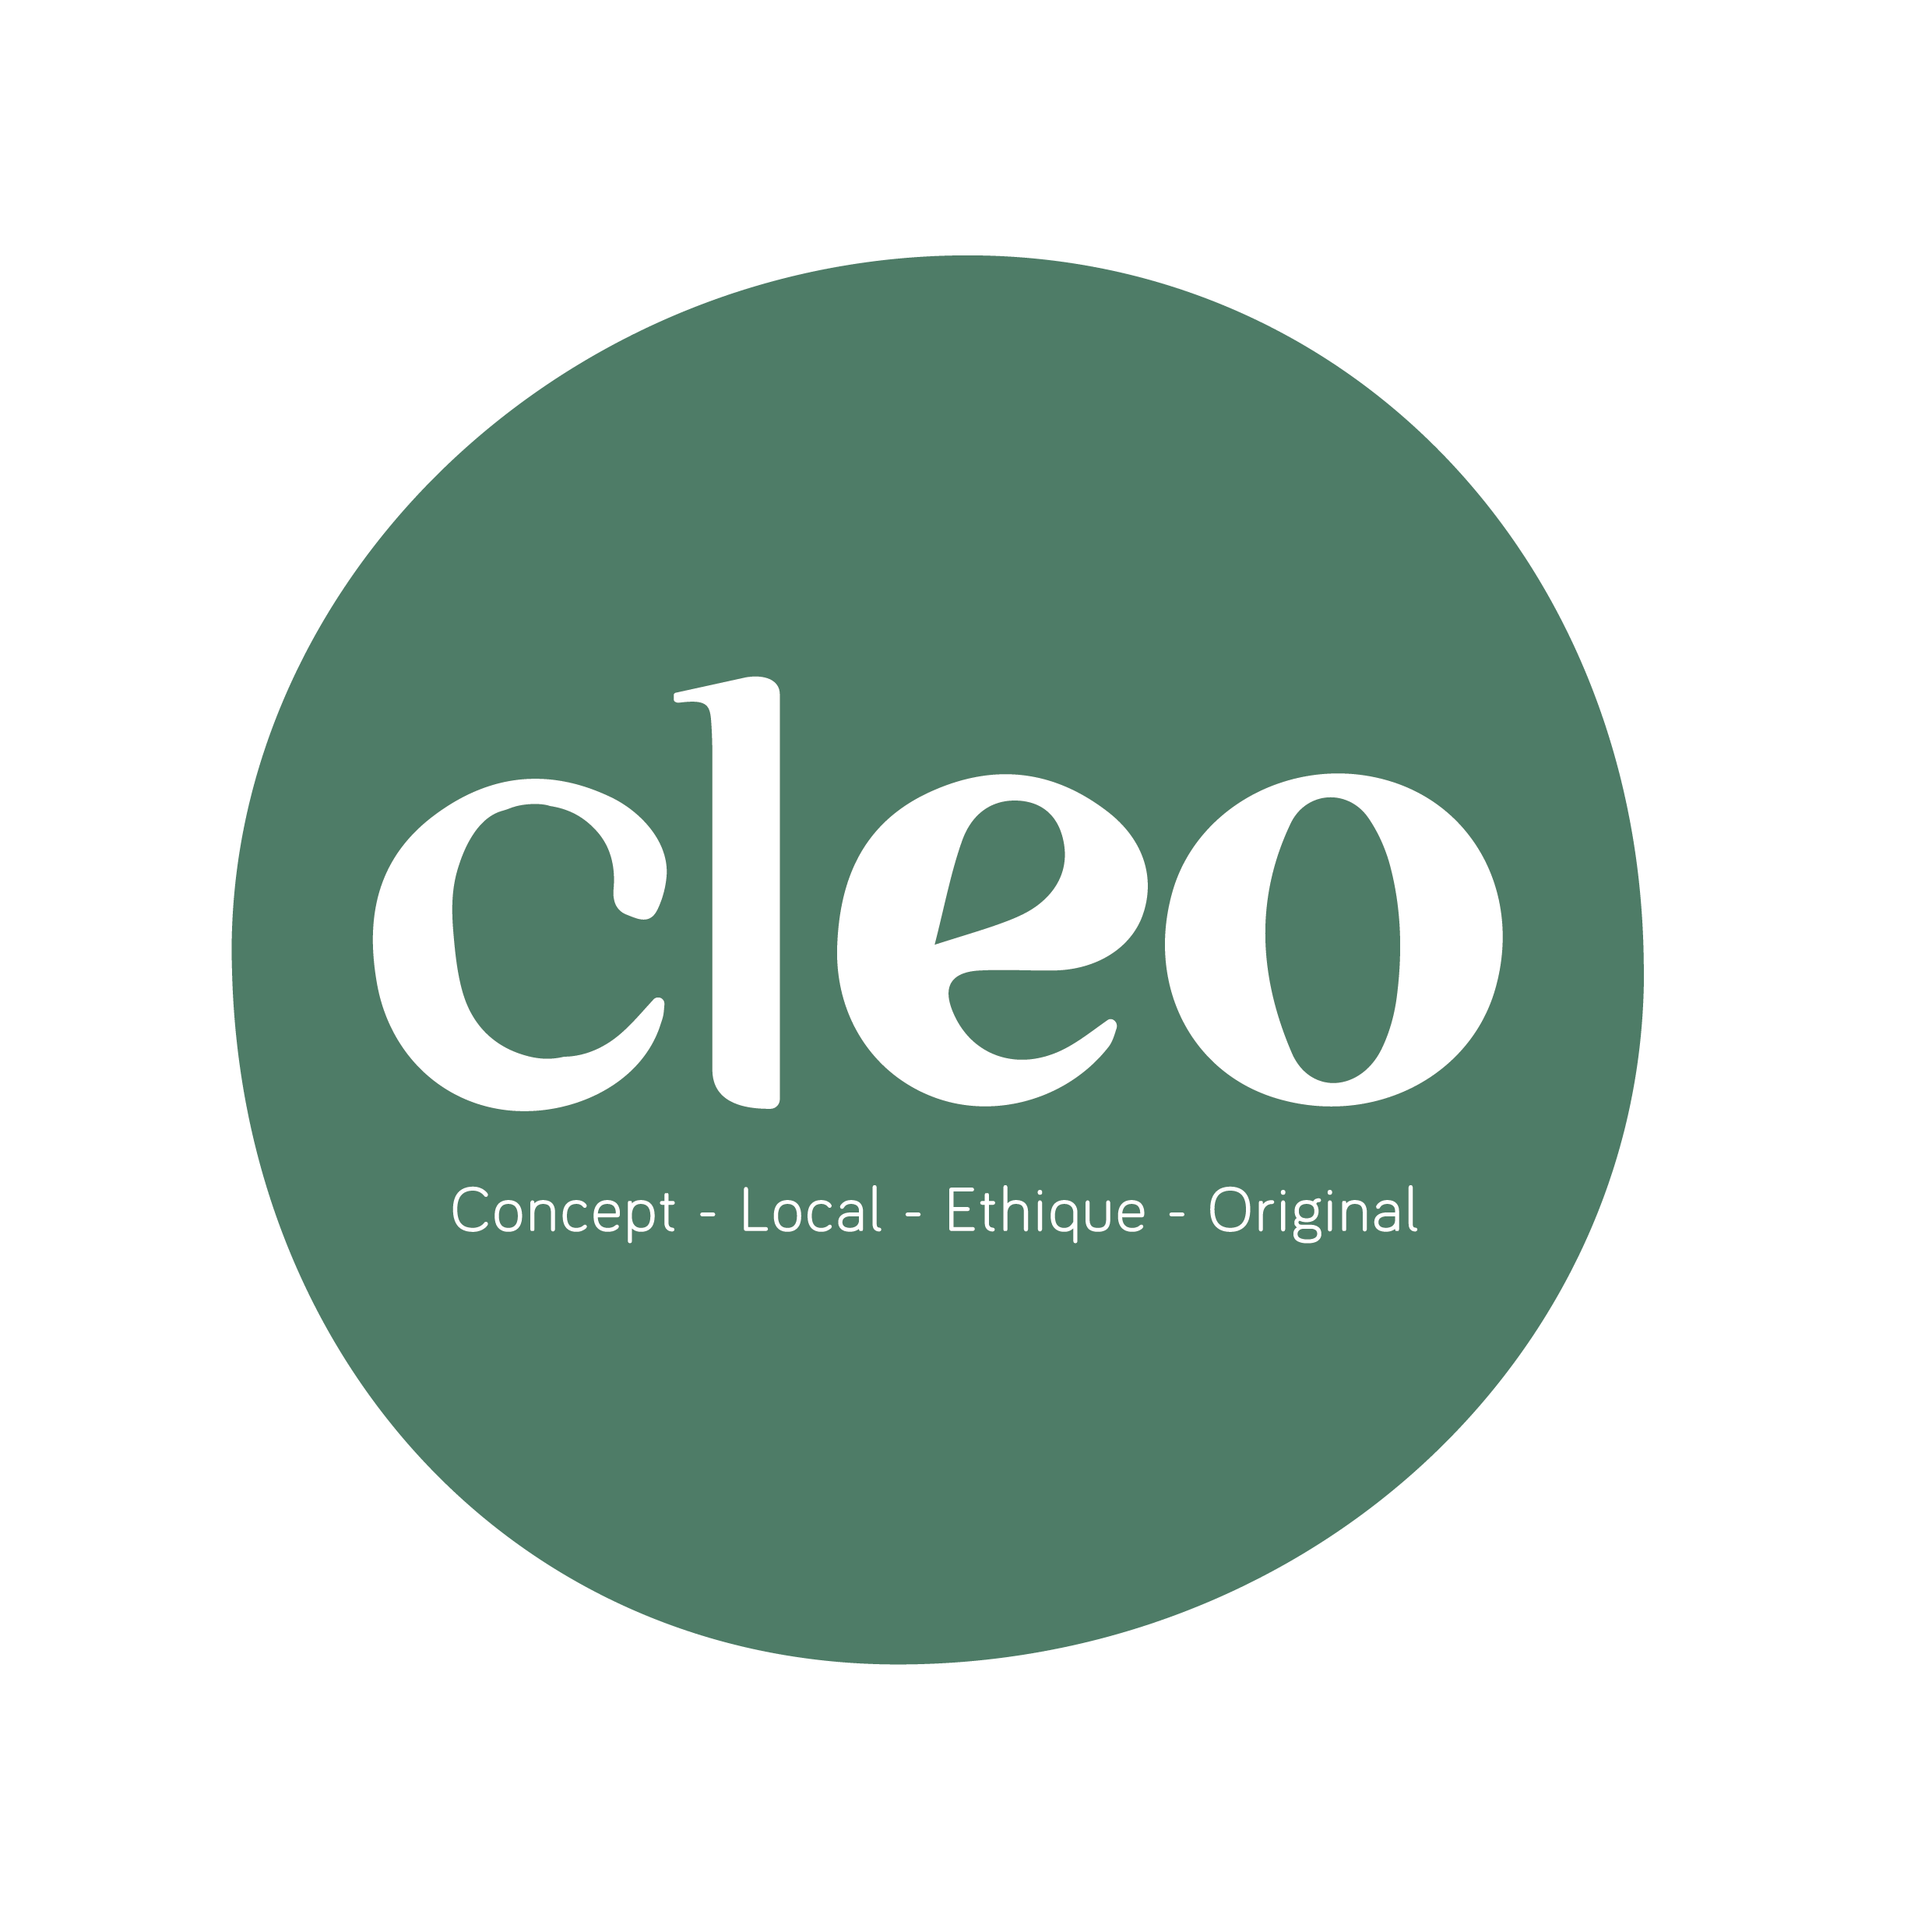 cleo